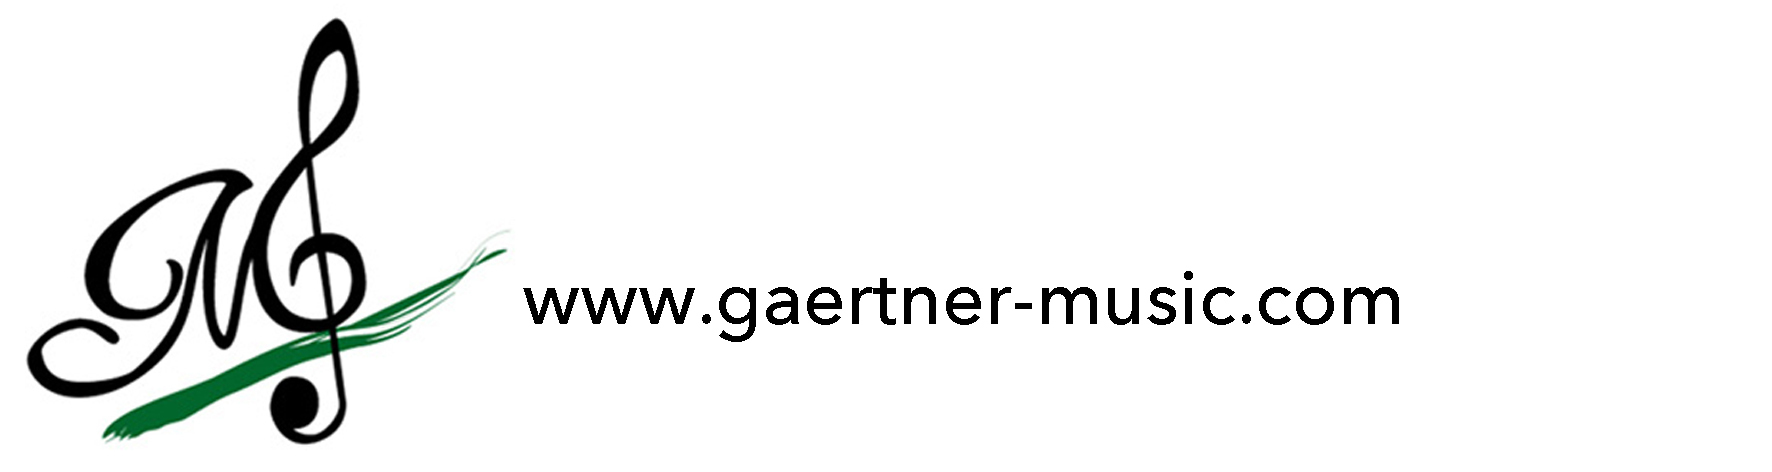 www.gaertner-music.com